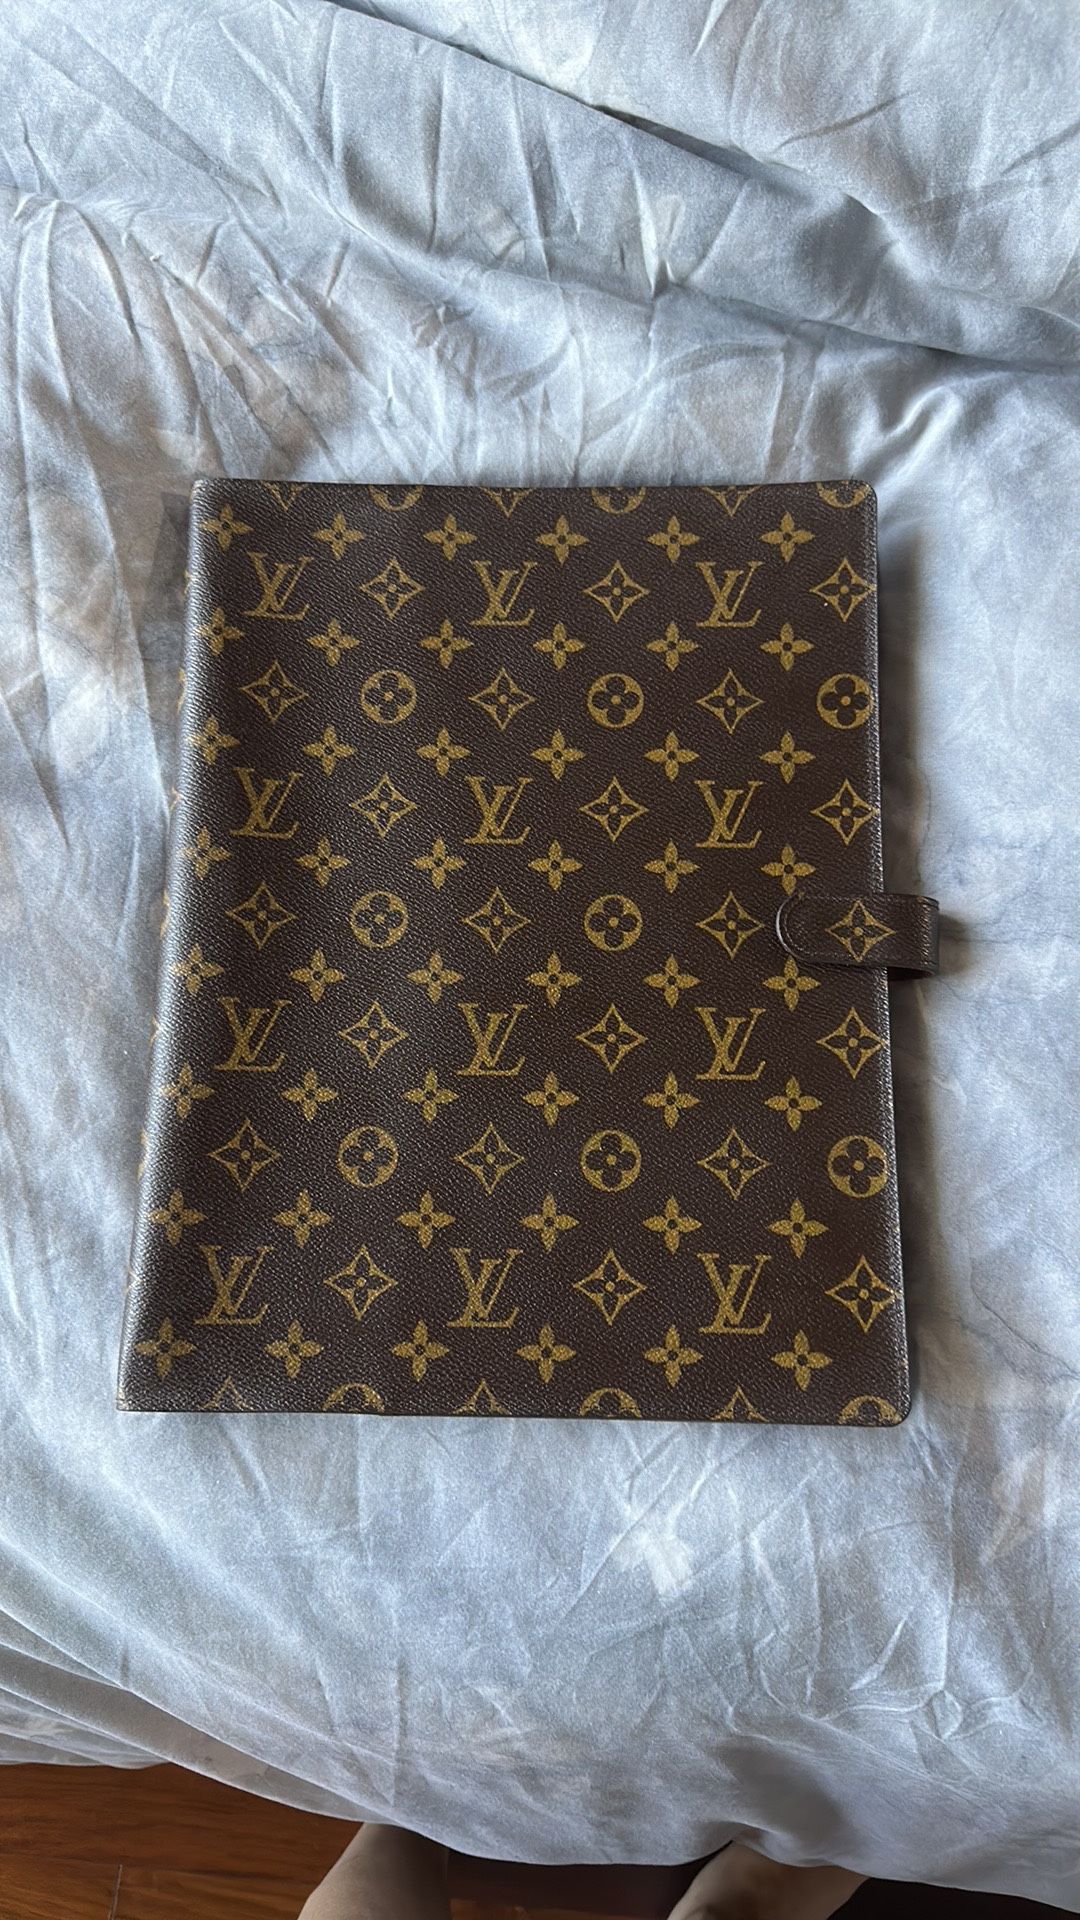 Authentic Louis Vuitton Monogram Agenda GM 4 Ring Notebook Binder Album  Book RAR